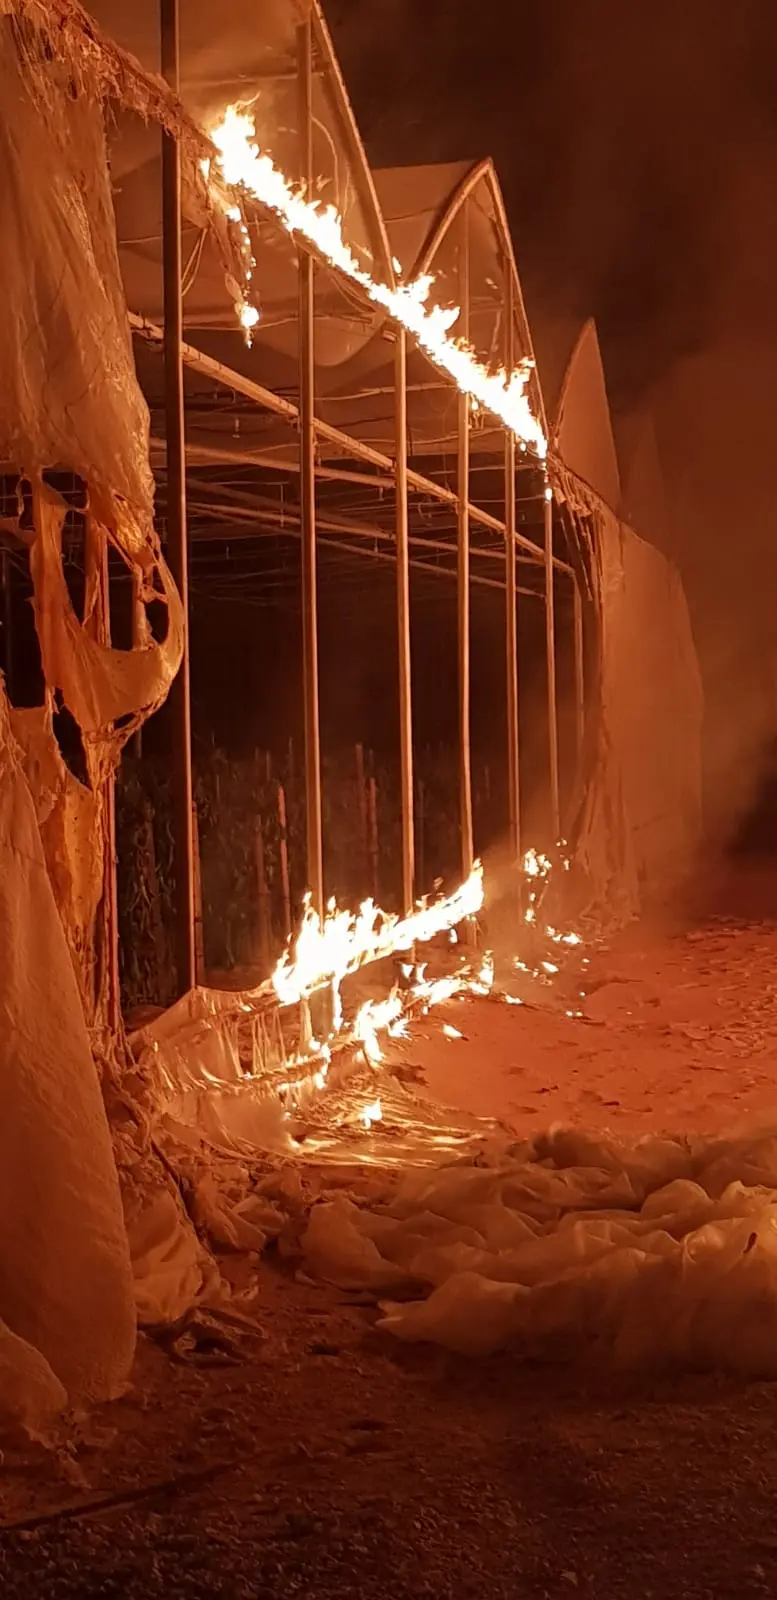 שריפה בחממות בקיבוץ בעוטף עזה כתוצאה מפצצת תאורה של צה"ל לאחר חדירת מחבל שנעצר